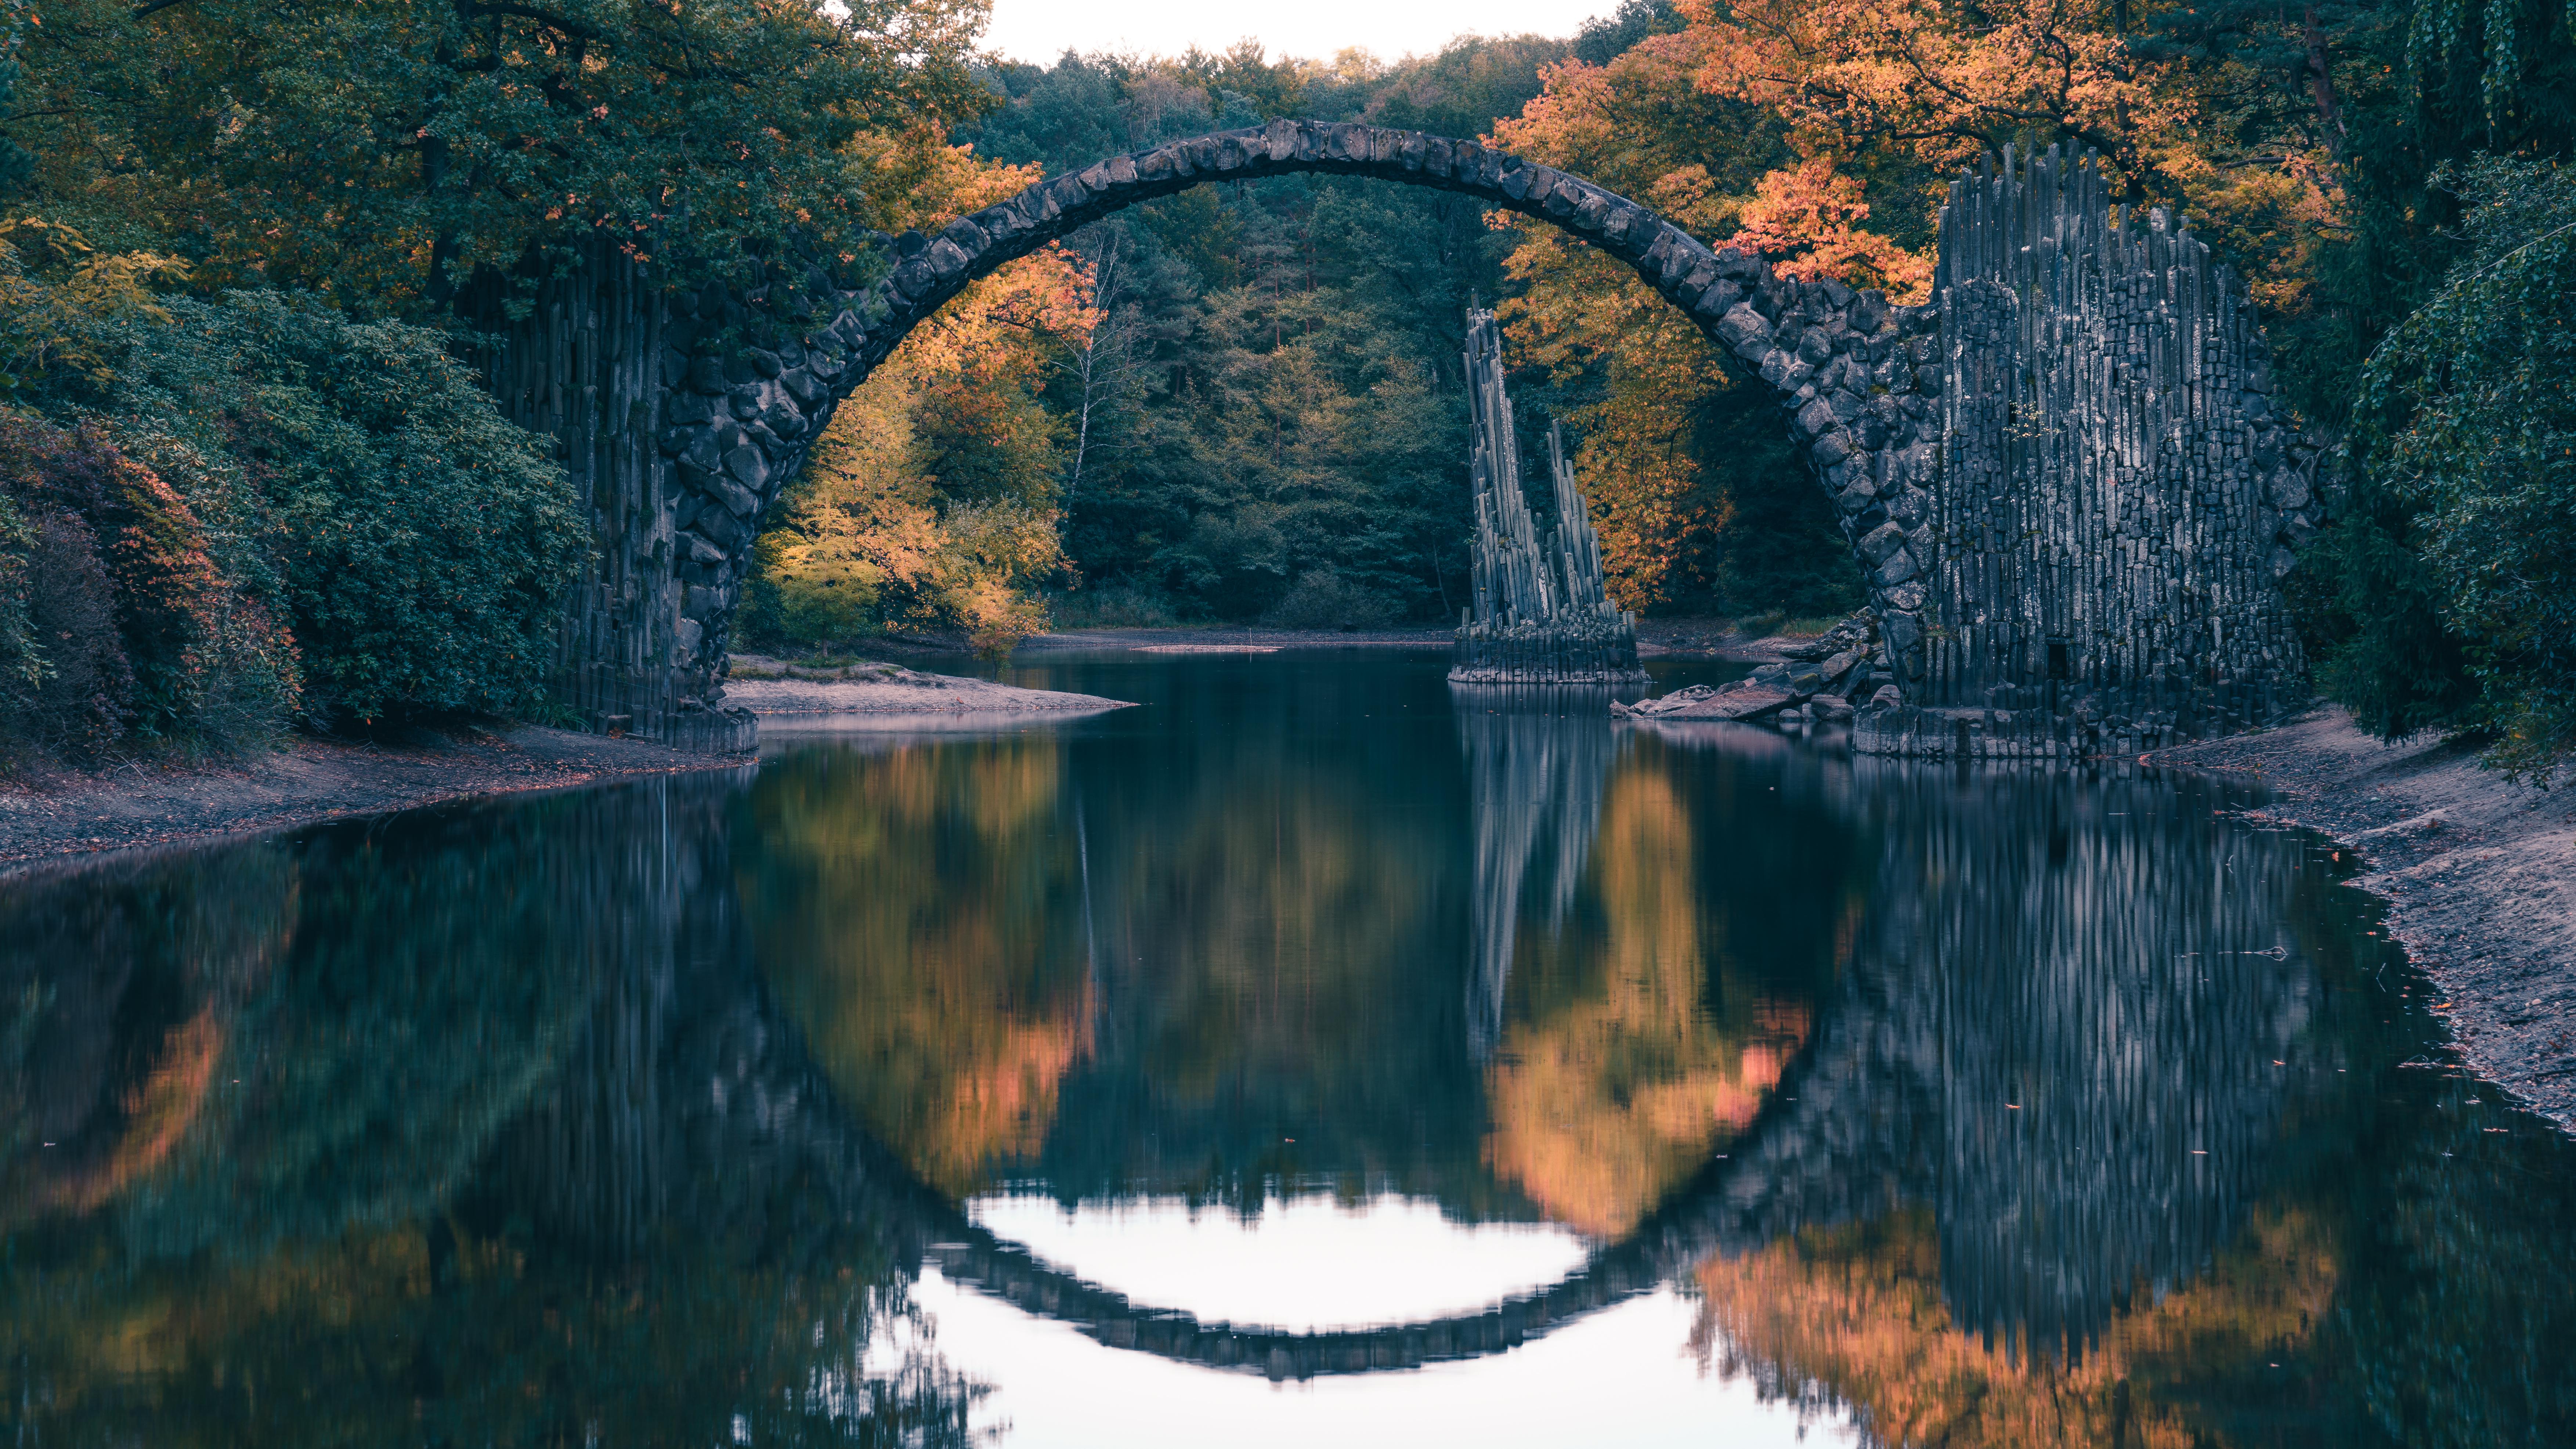 Дьявольский мост или мост ракотцбрюке в германии.